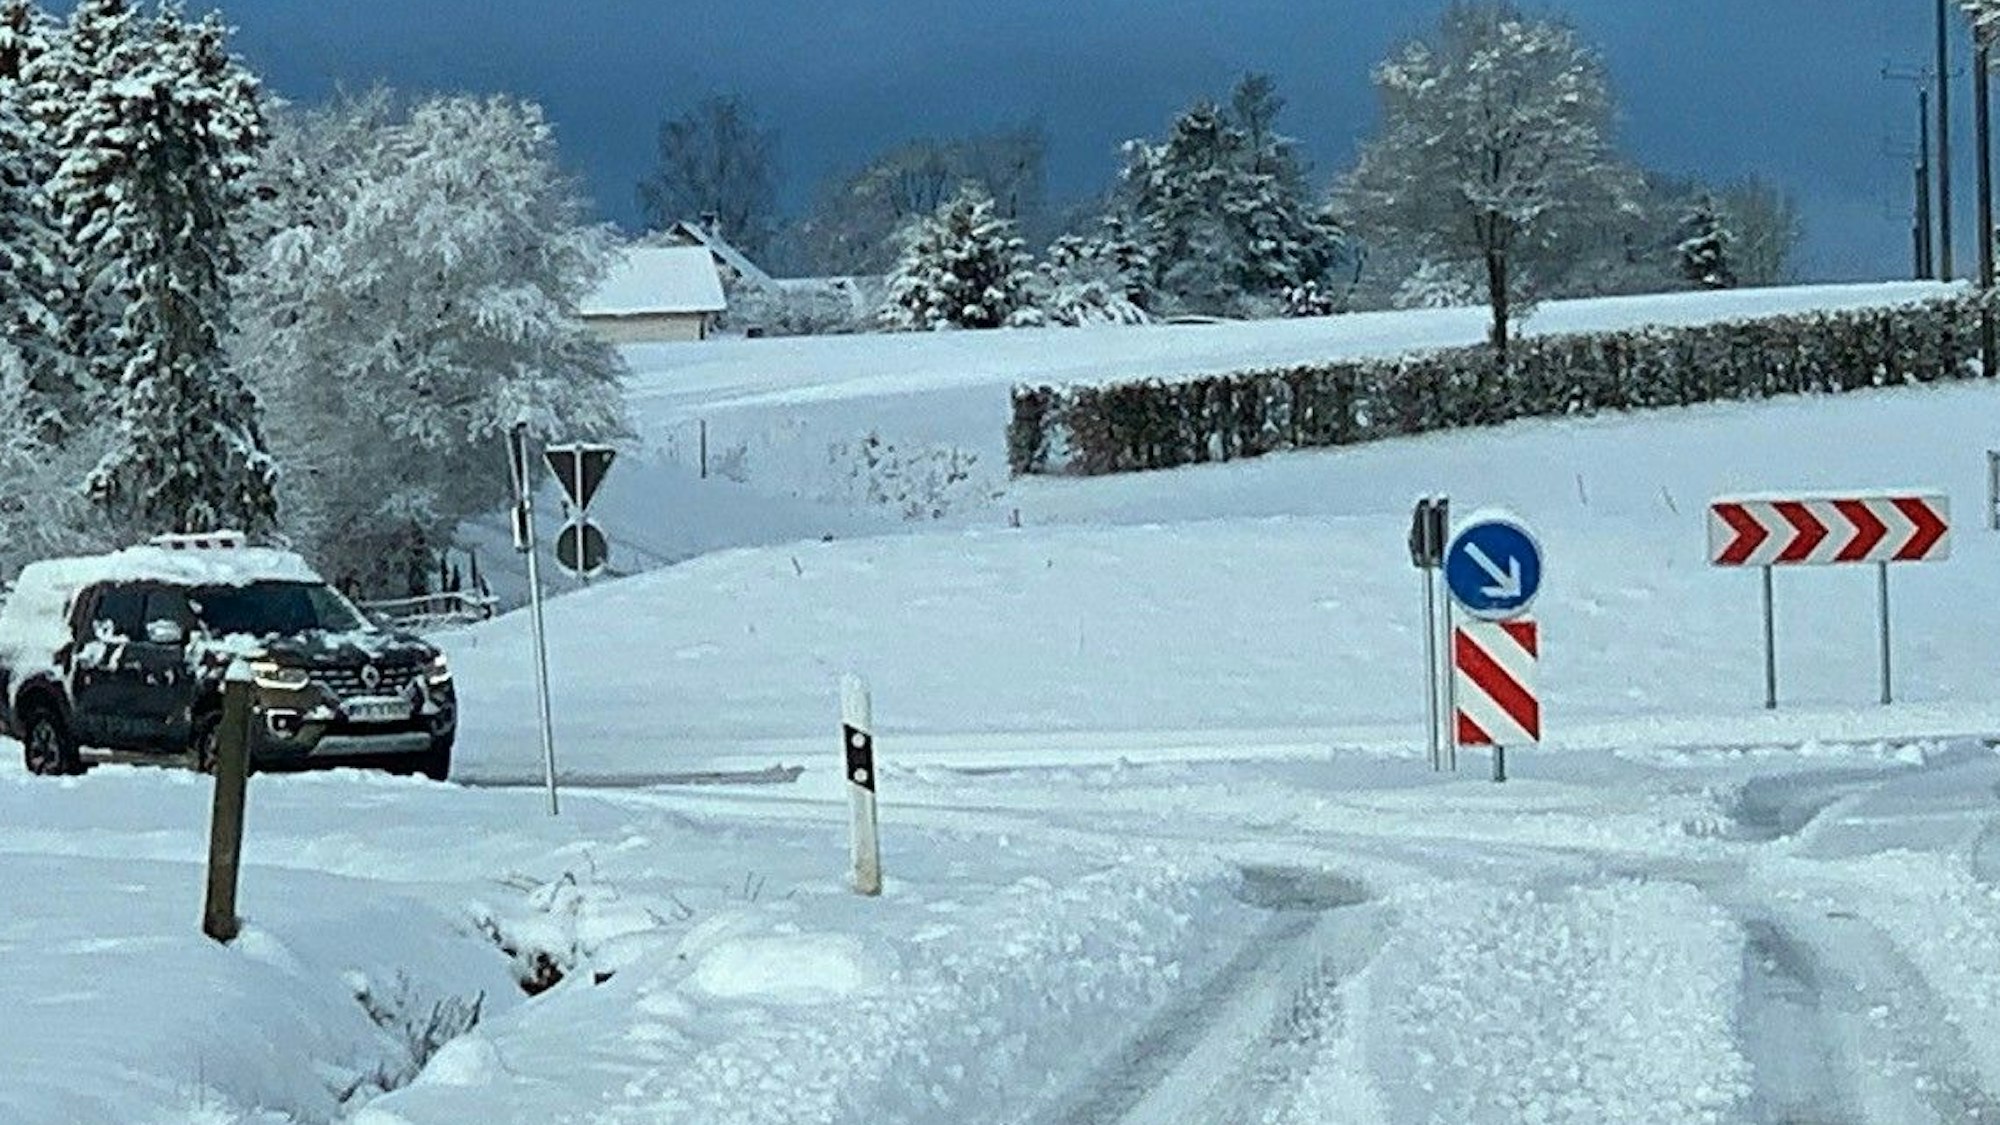 Ein Auto fährt auf eine Kreuzug zu. Die Fahrbahn ist mit Schnee bedeckt.